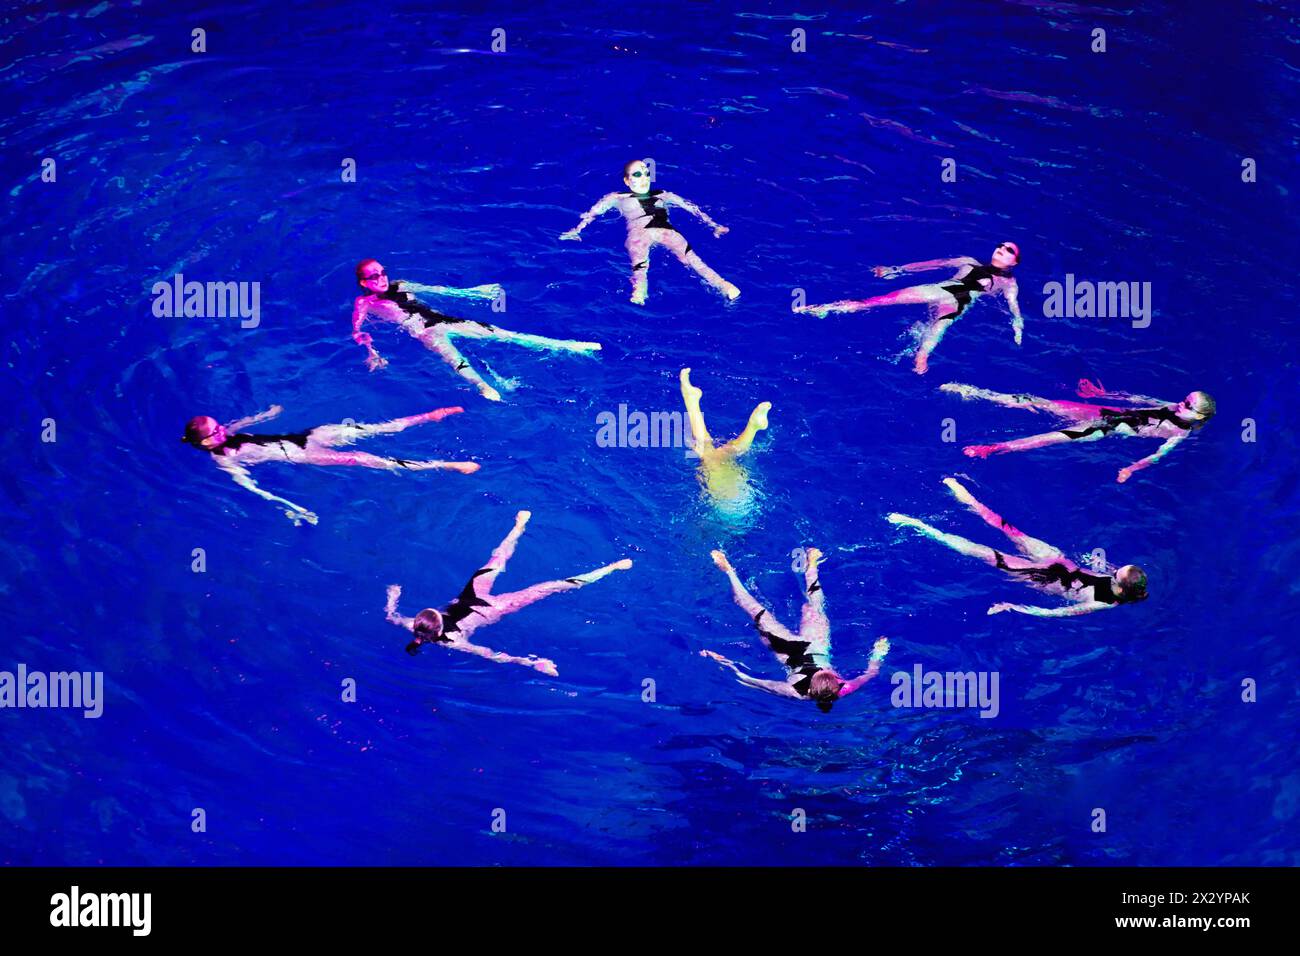 MOSKAU - 4. JAN: Synchronisierte Schwimmer-Performance im Schwimmbad des Sportkomplexes Olympyisky während der Musical Show Through the Looking Glass, Januar Stockfoto